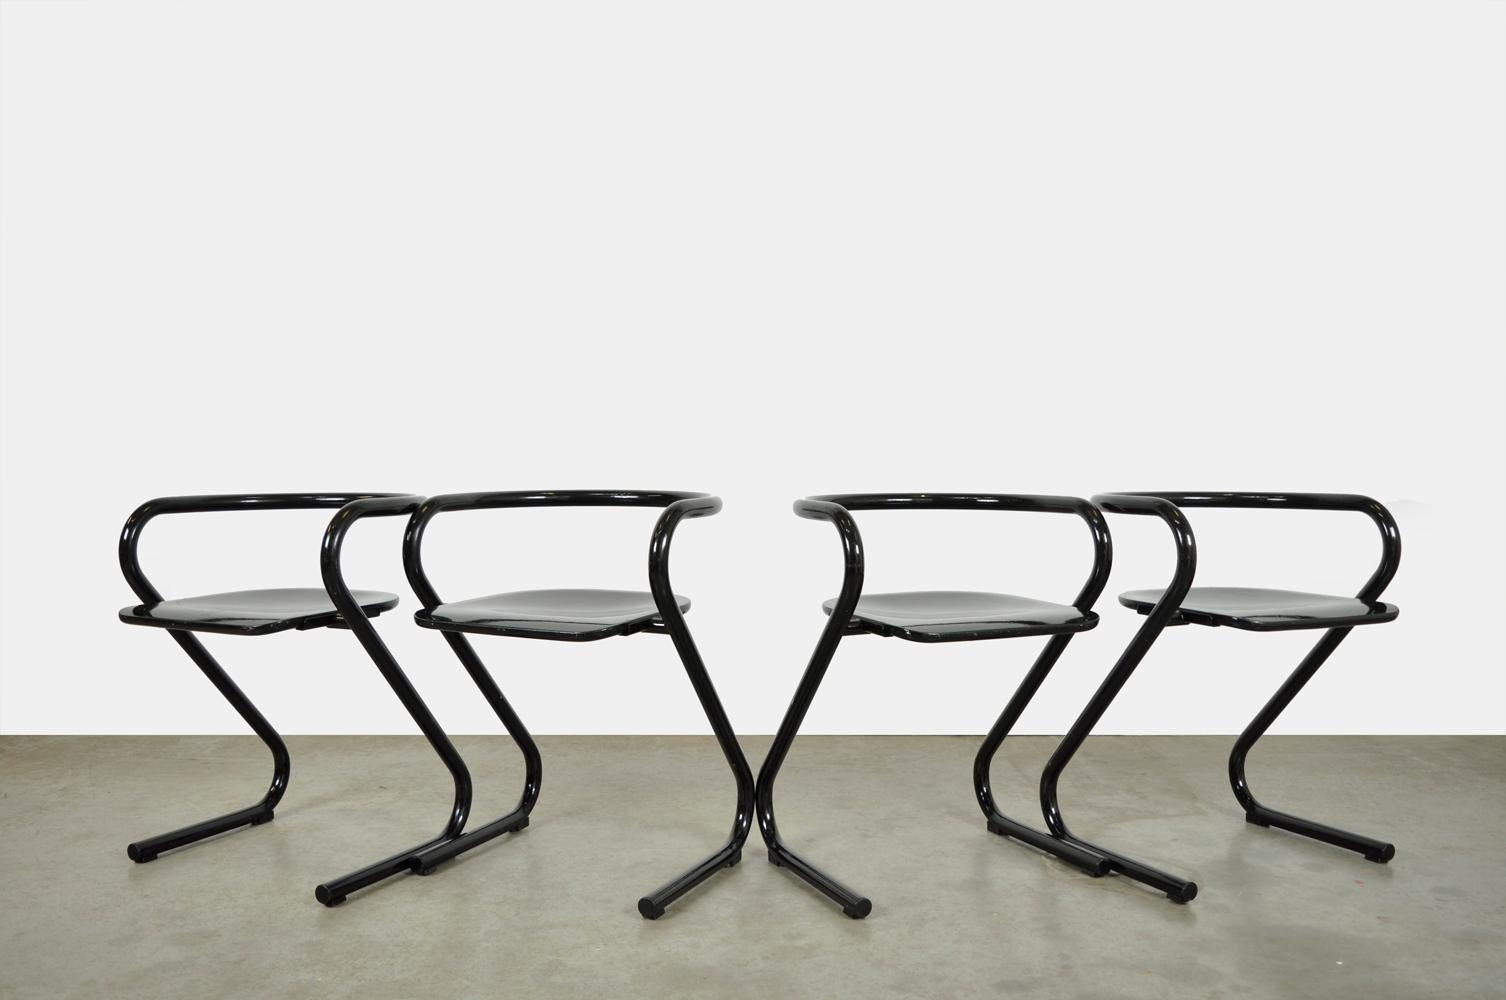 Satz von 4 besonderen Esszimmerstühlen / Tischhockern Typ S 70 von dem schwedischen Designduo Börge Lindau & Bo Lindekrantz, hergestellt von Lammhults, 1970er Jahre.

Die Hocker haben ein schwarz beschichtetes, einteiliges Stahlrohrgestell und